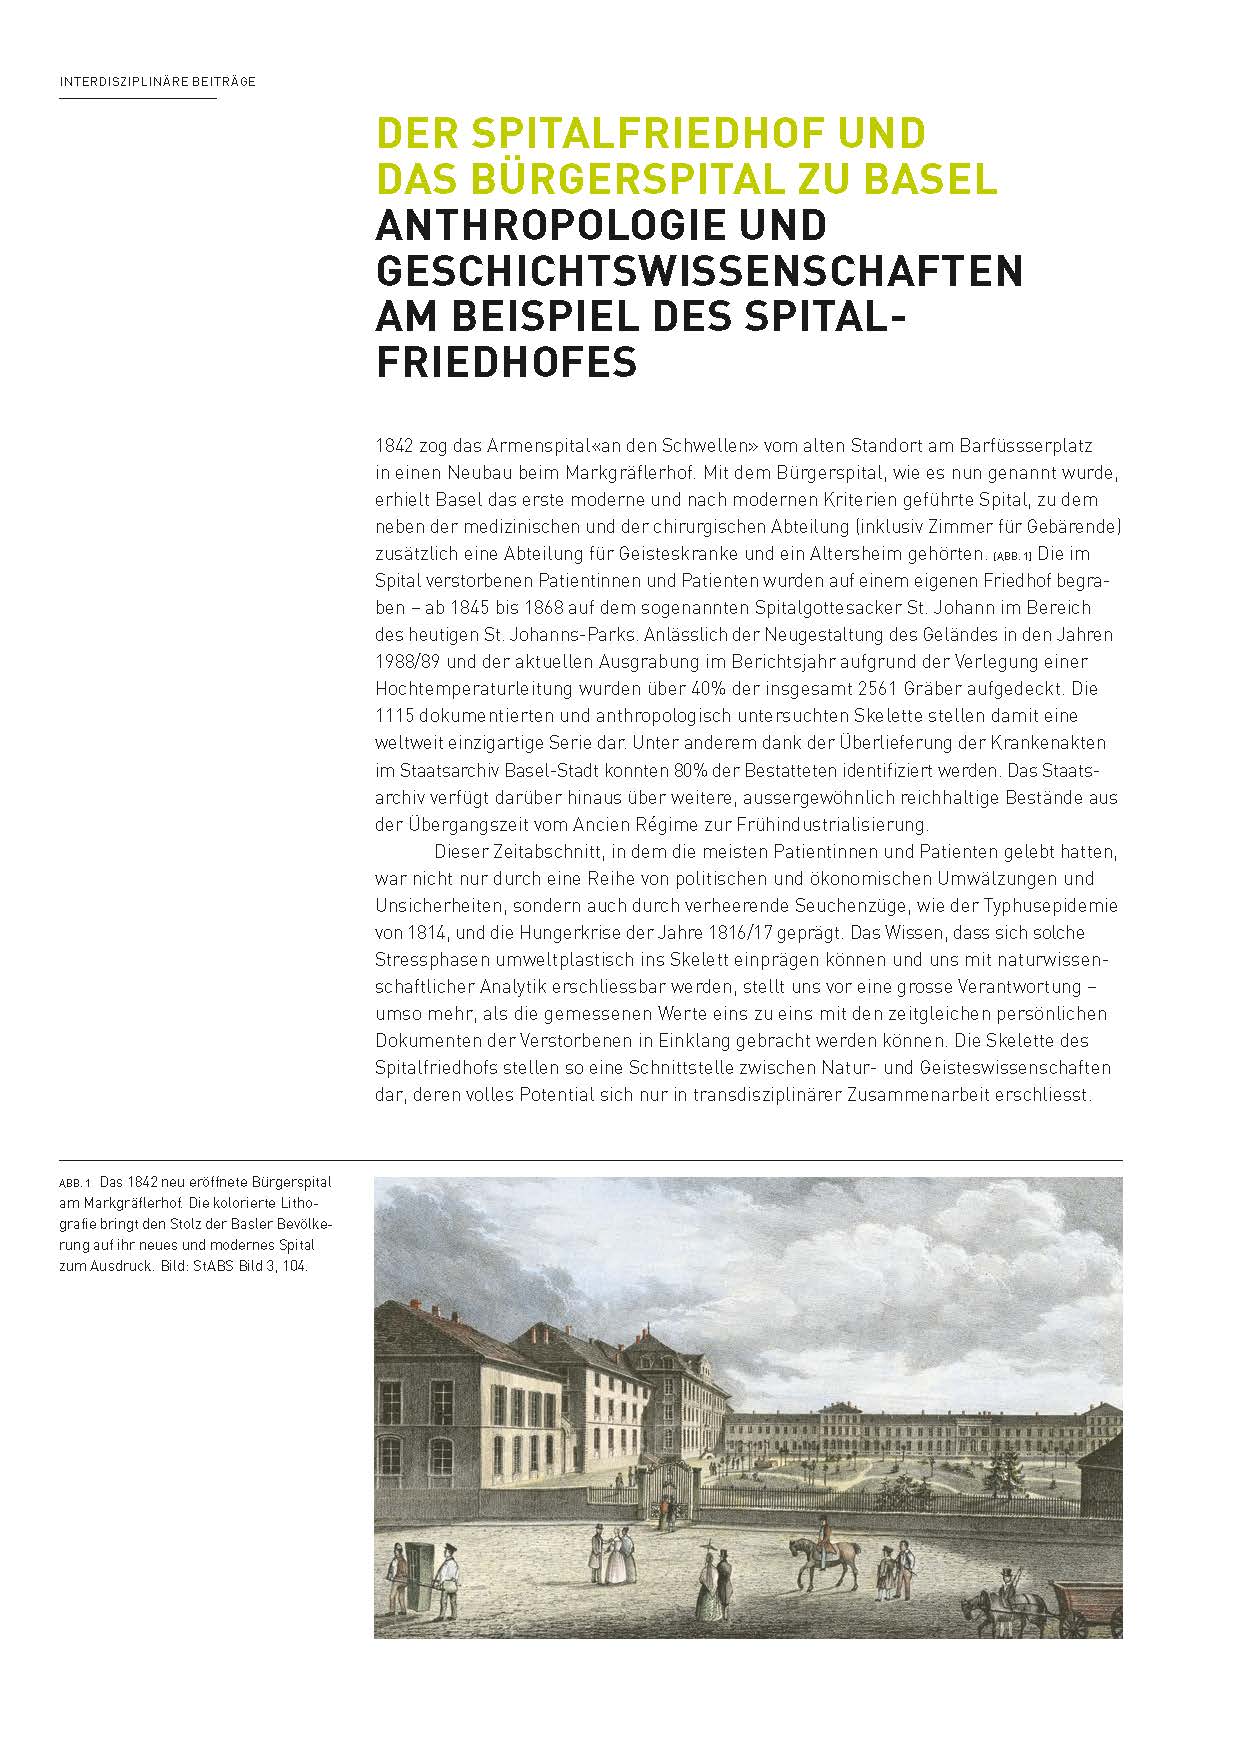 Seite mit Abbildung des 1842 neu eröffneten Bürgerspitals am Markgräflerhof